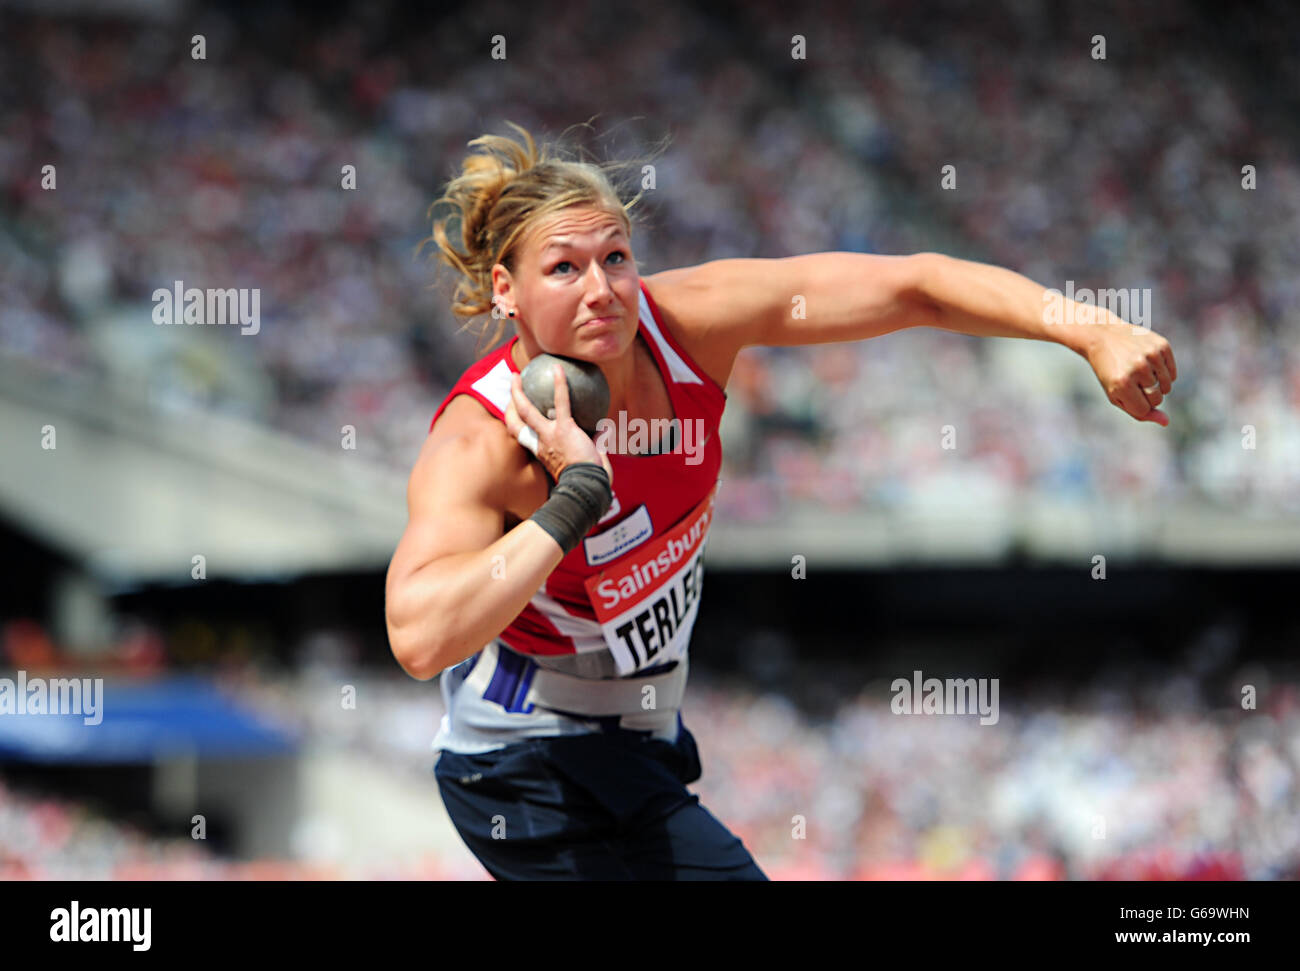 Josephine Terlecki de Alemania durante el tiro femenino puesto durante el segundo día de la reunión de la Liga Diamante de Londres de IAAF en el Estadio Olímpico de Londres. Foto de stock